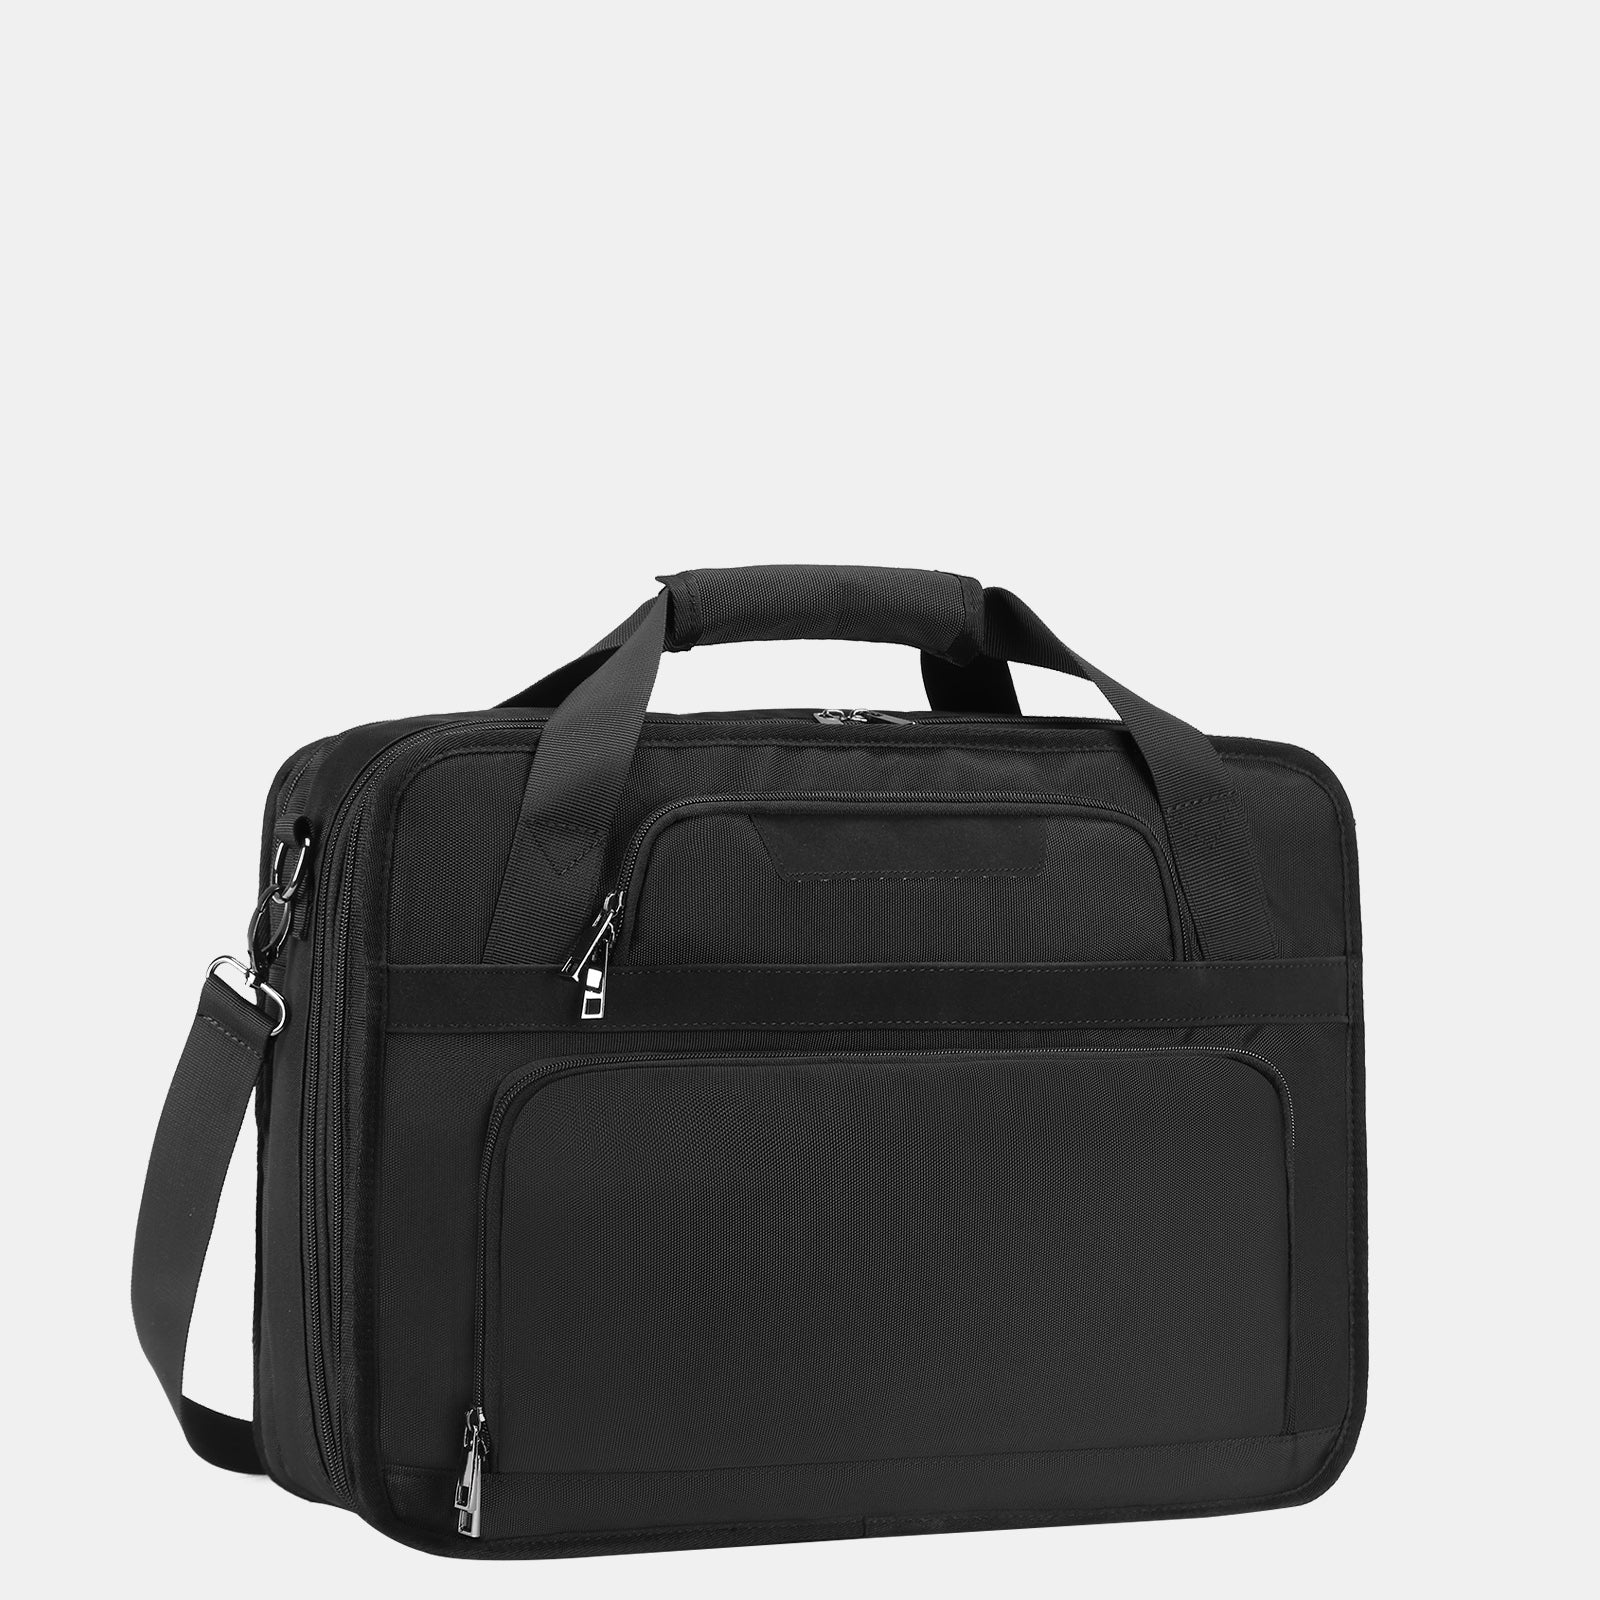 Estarer Mens Laptop Briefcase Black for Business